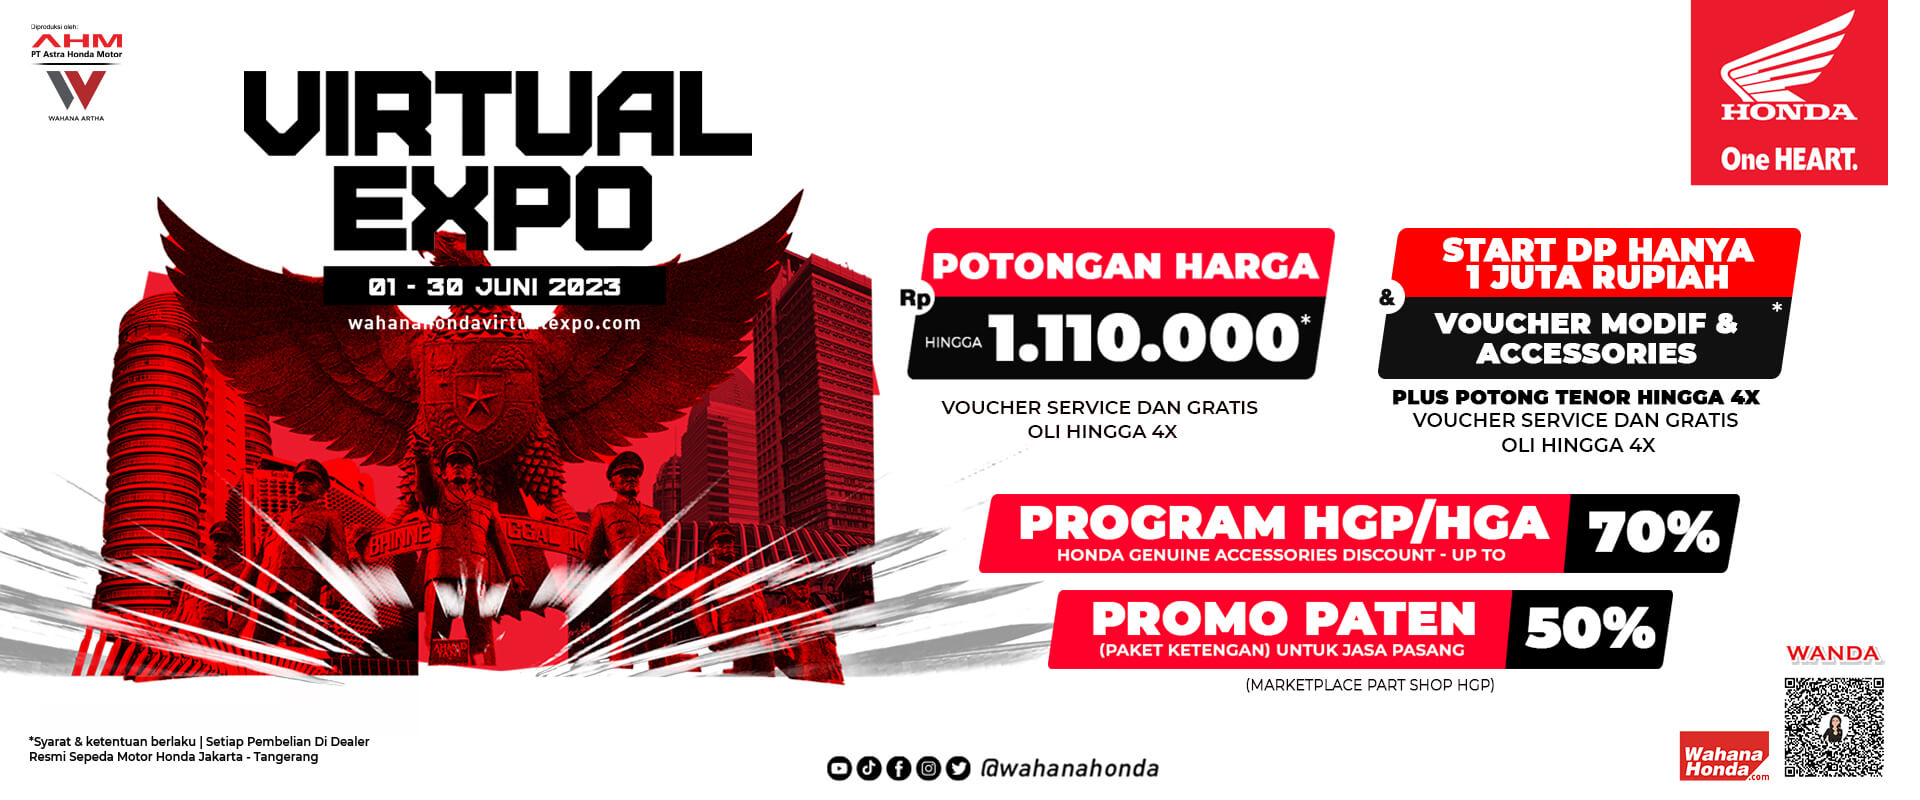 Wahana Honda Virtual Expo 01 - 30 Juni 2023